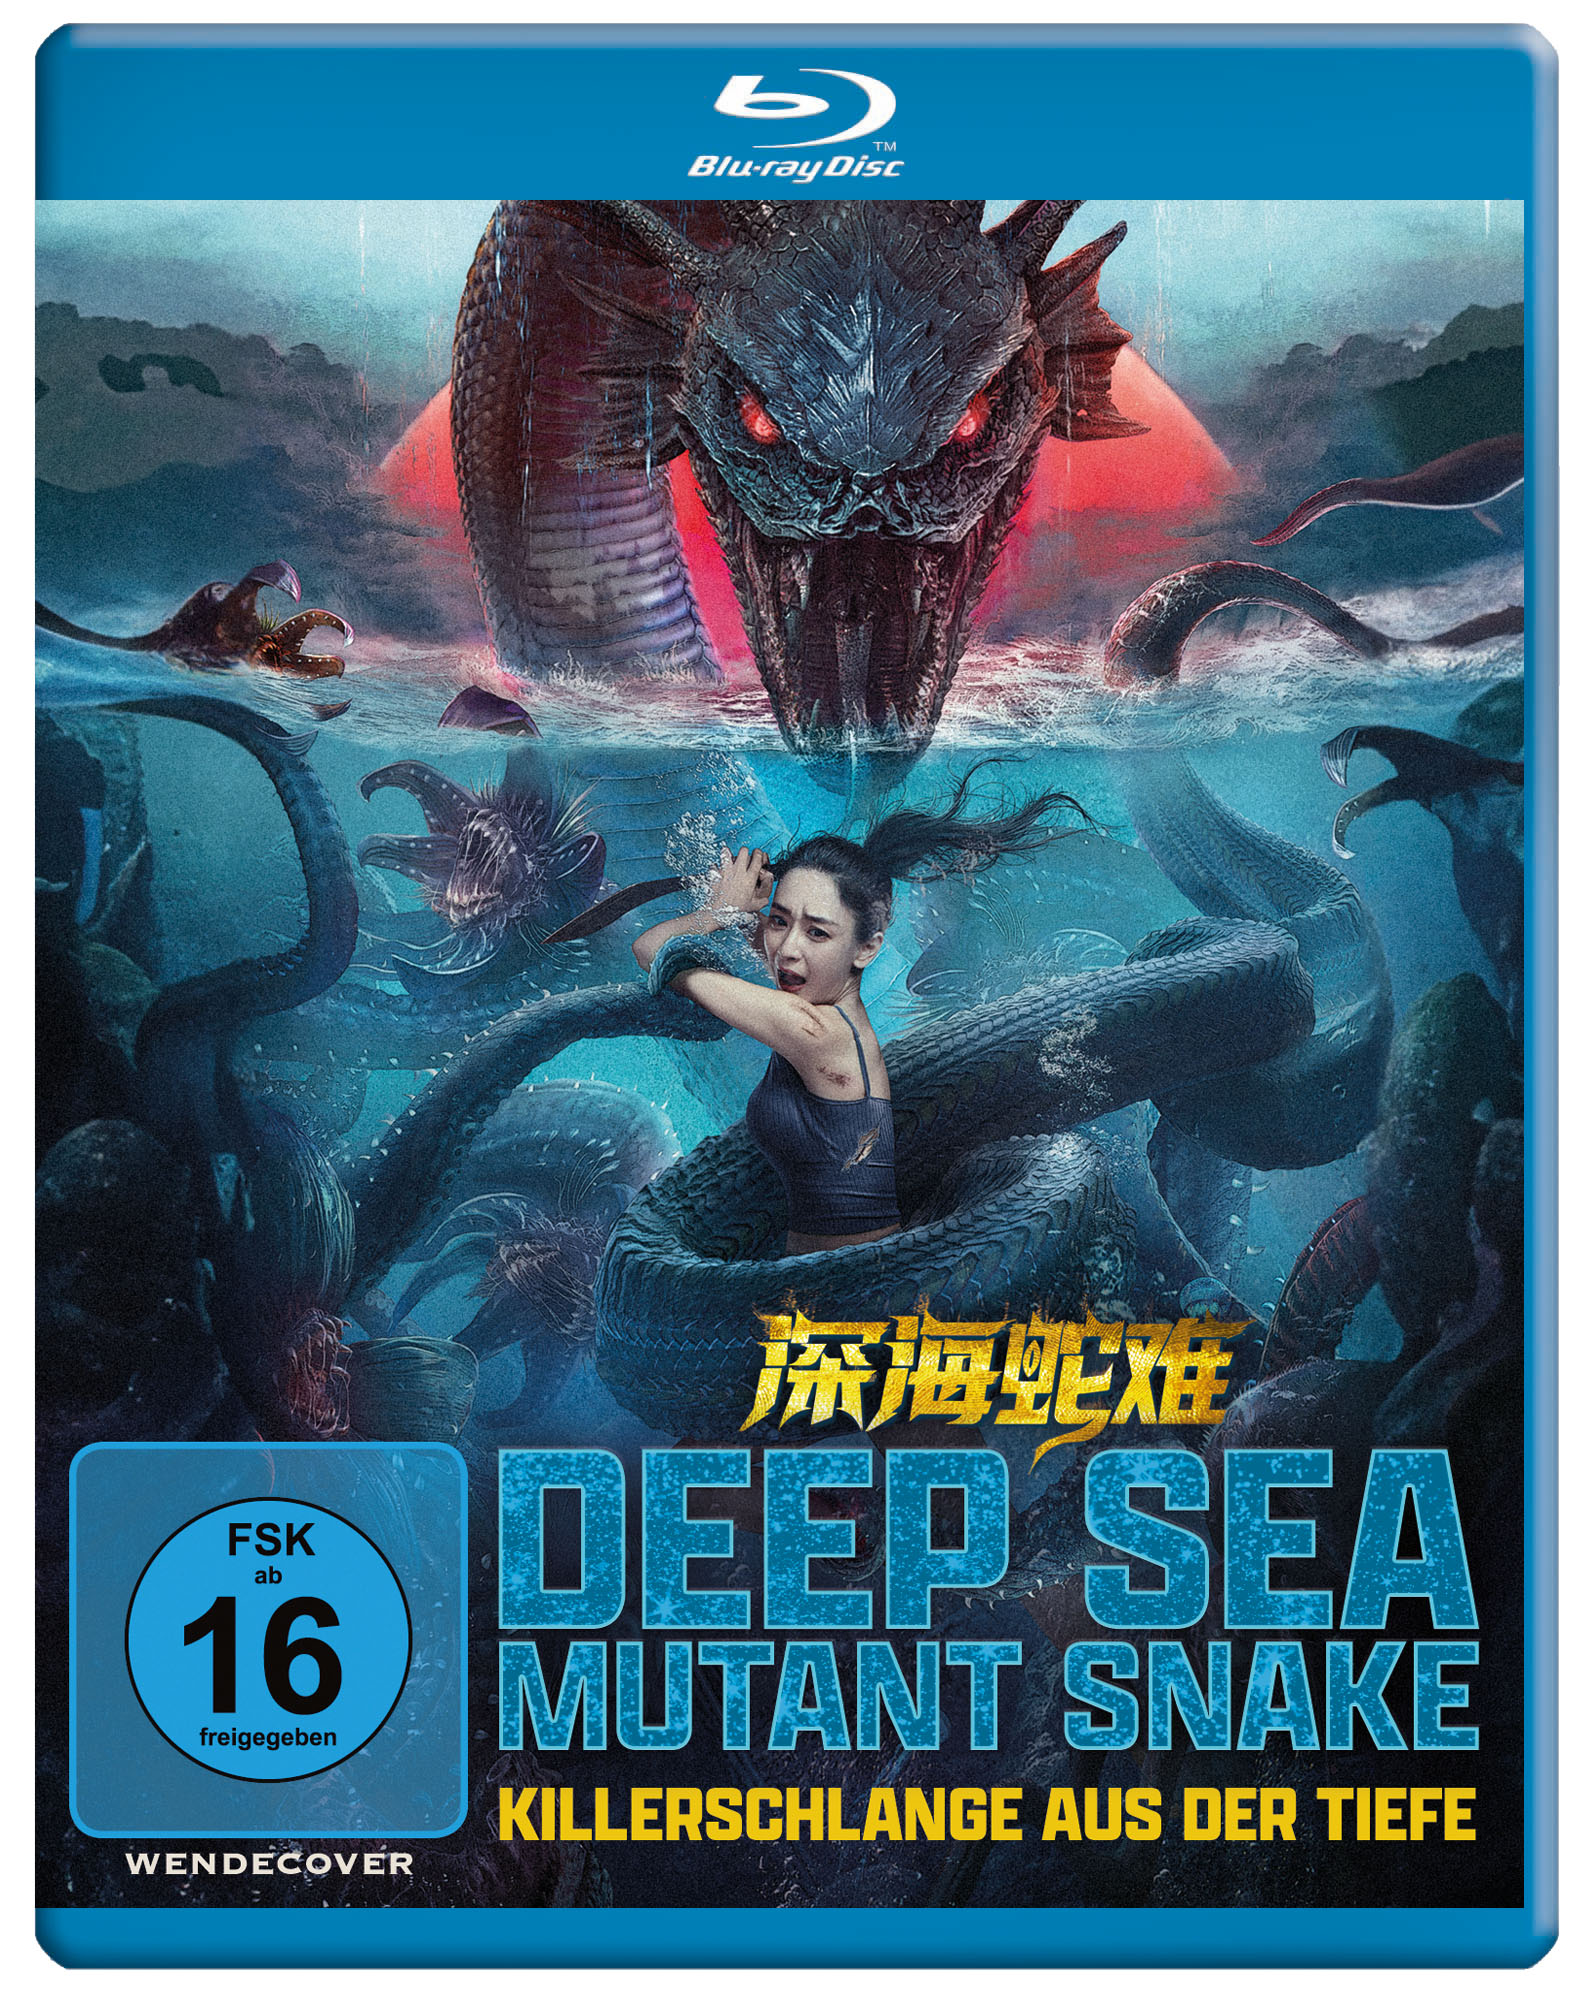 Deep Sea Mutant Snake - Killerschlange aus der Tiefe